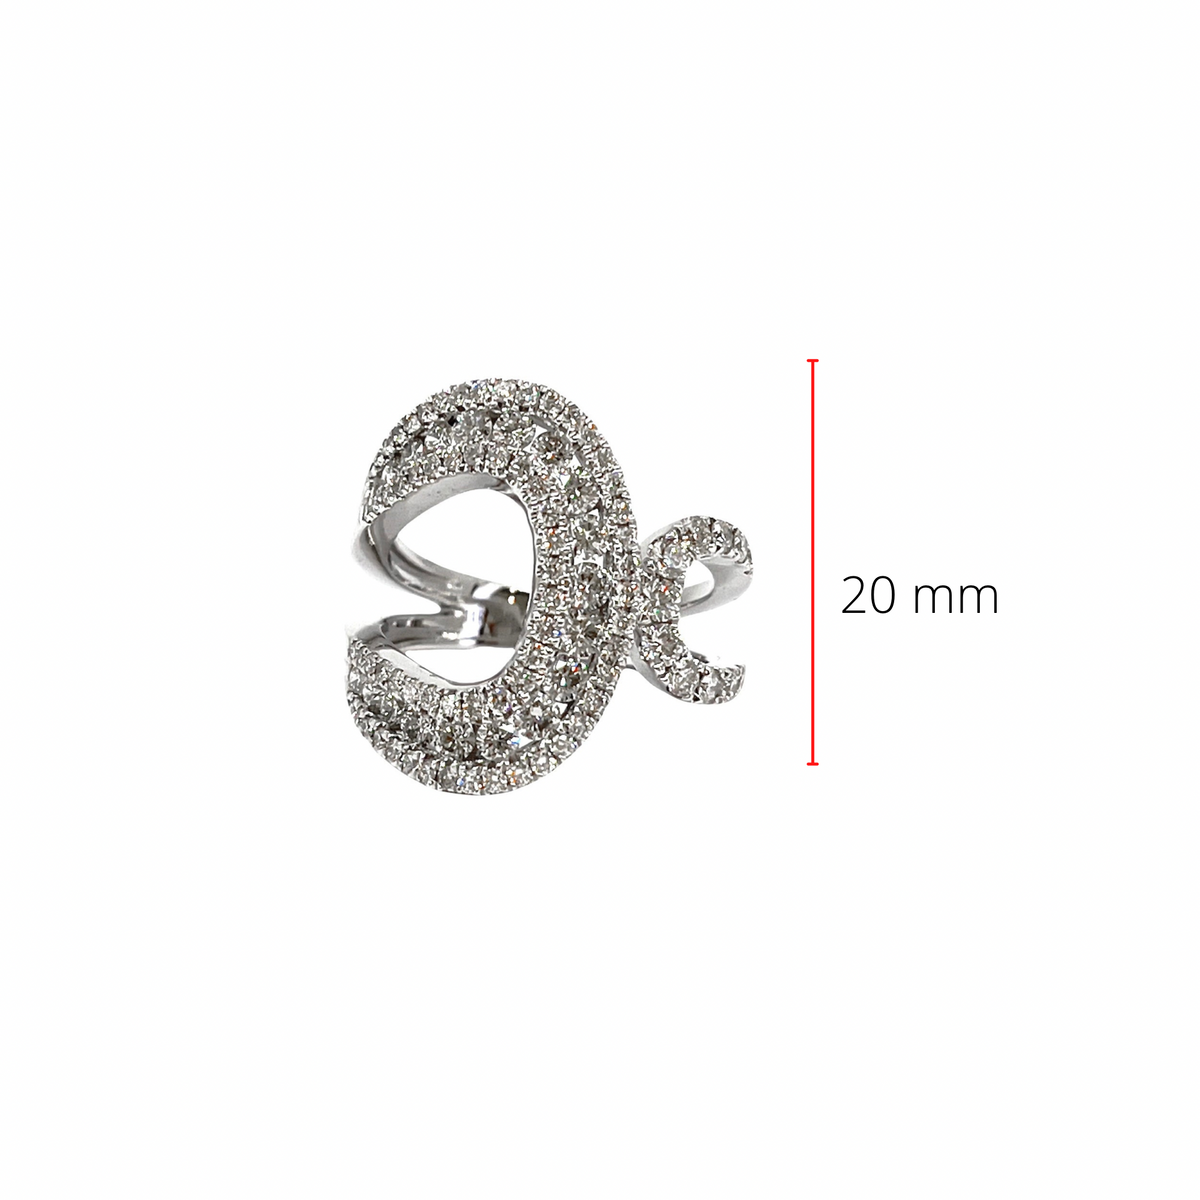 14K White Gold 1.43cttw Diamond Ring- Size 6.5